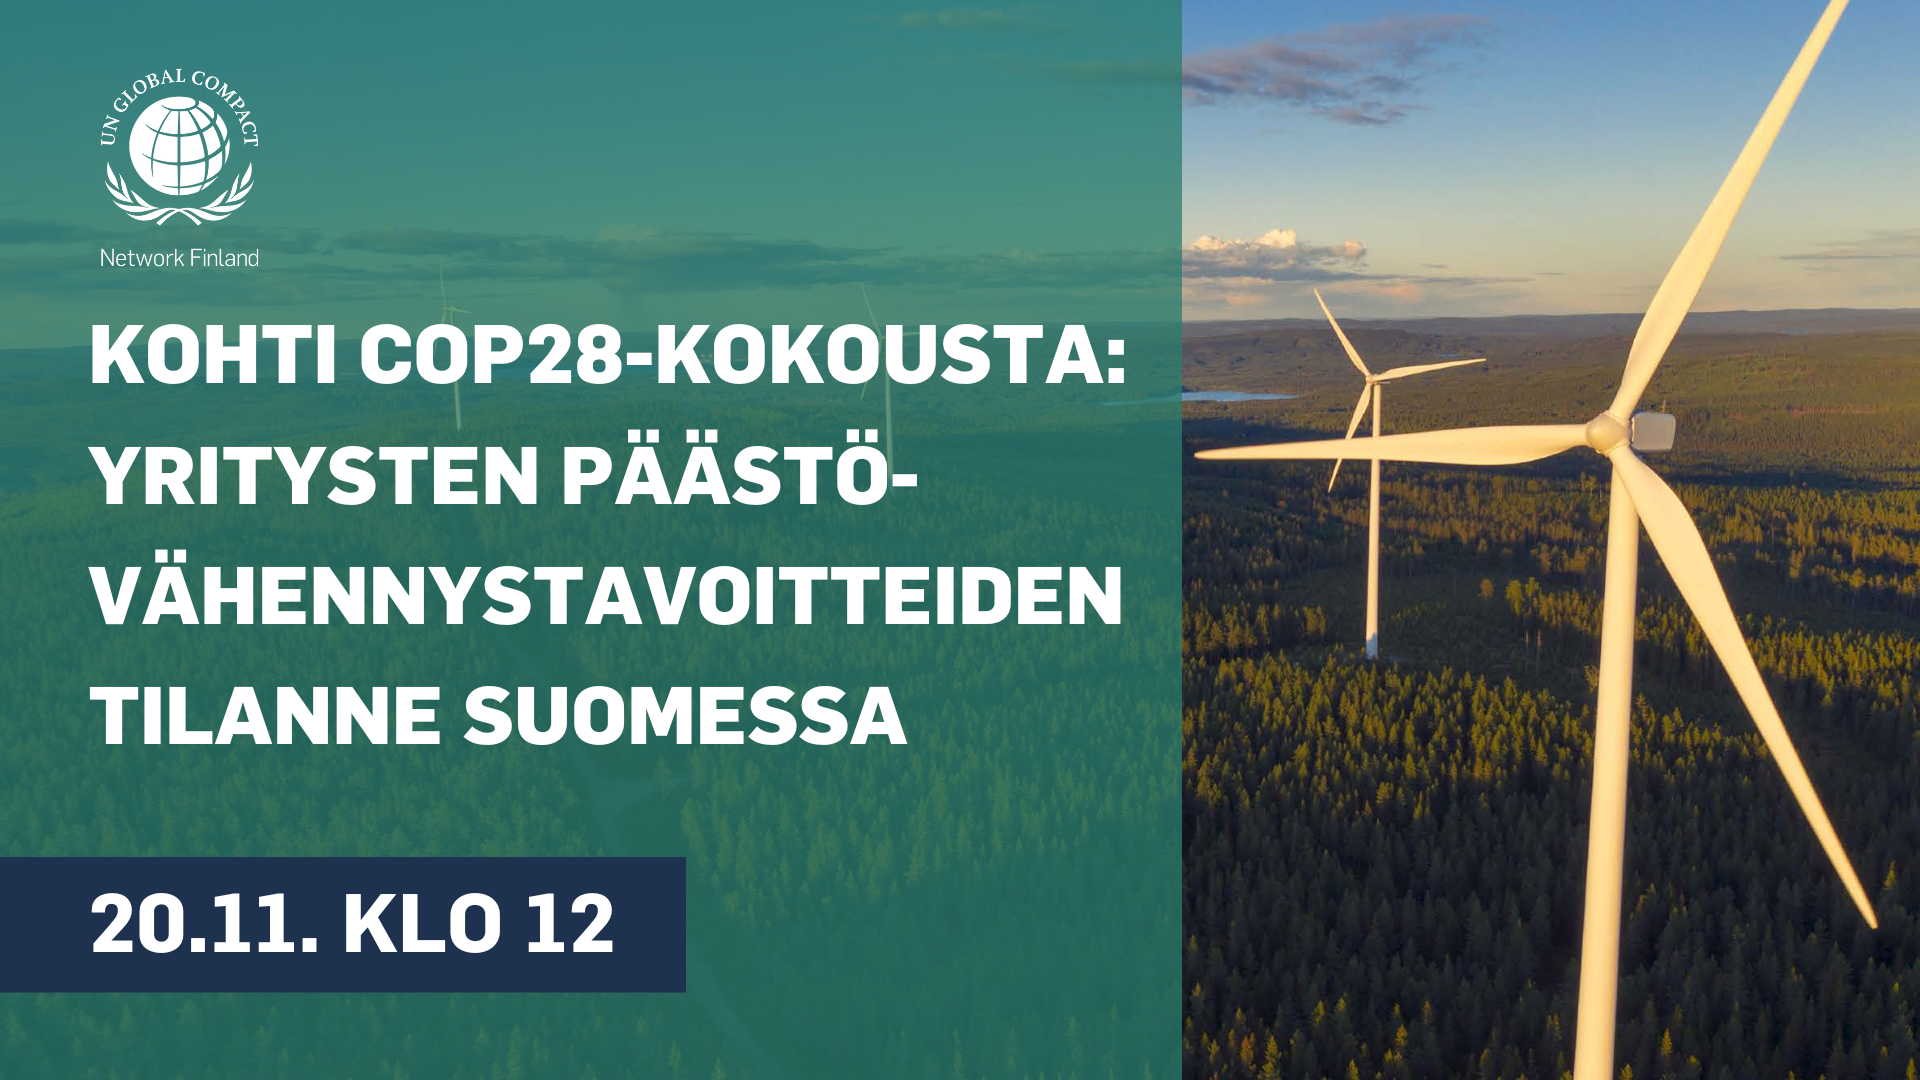 Tule webinaariin kuulemaan suomalaisyritysten tiedepohjaisesta ilmastotyöstä sekä odotuksista tulevaan COP28-kokoukseen.